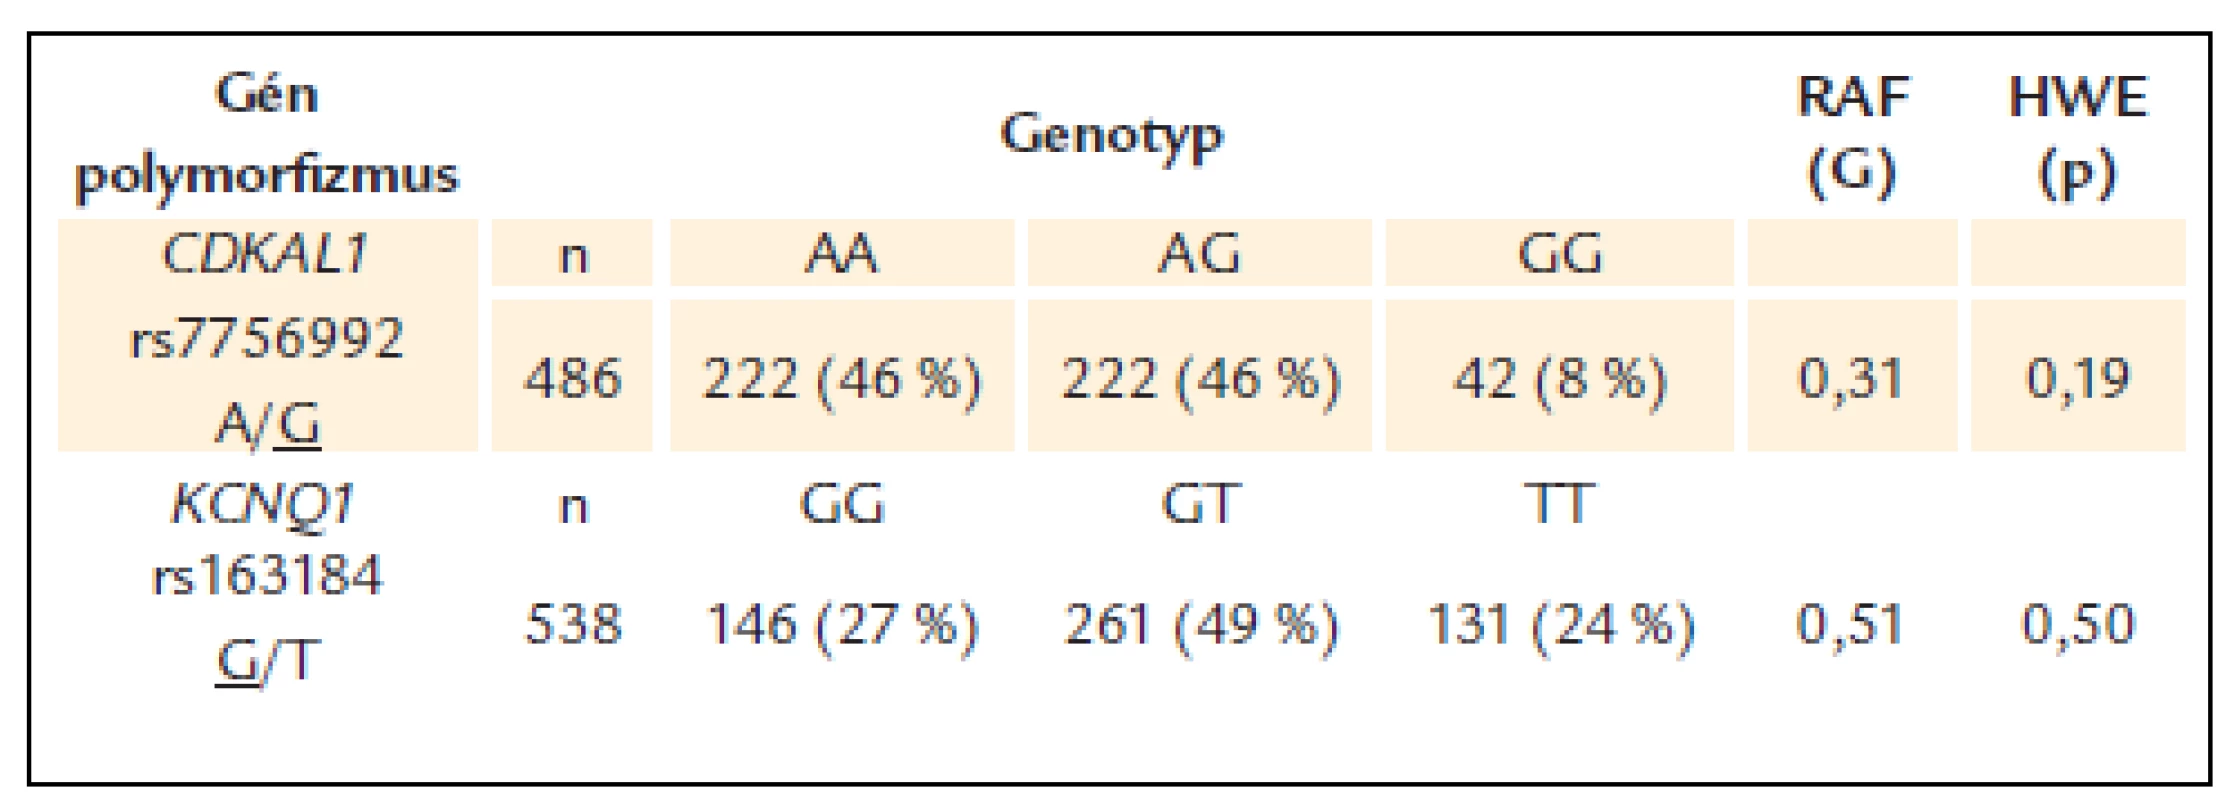 Frekvencie genotypov a rizikových alel pri polymorfi zmoch génov <em>CDKAL1</em> a <em>KCNQ1</em> u pacientov s DM2T.